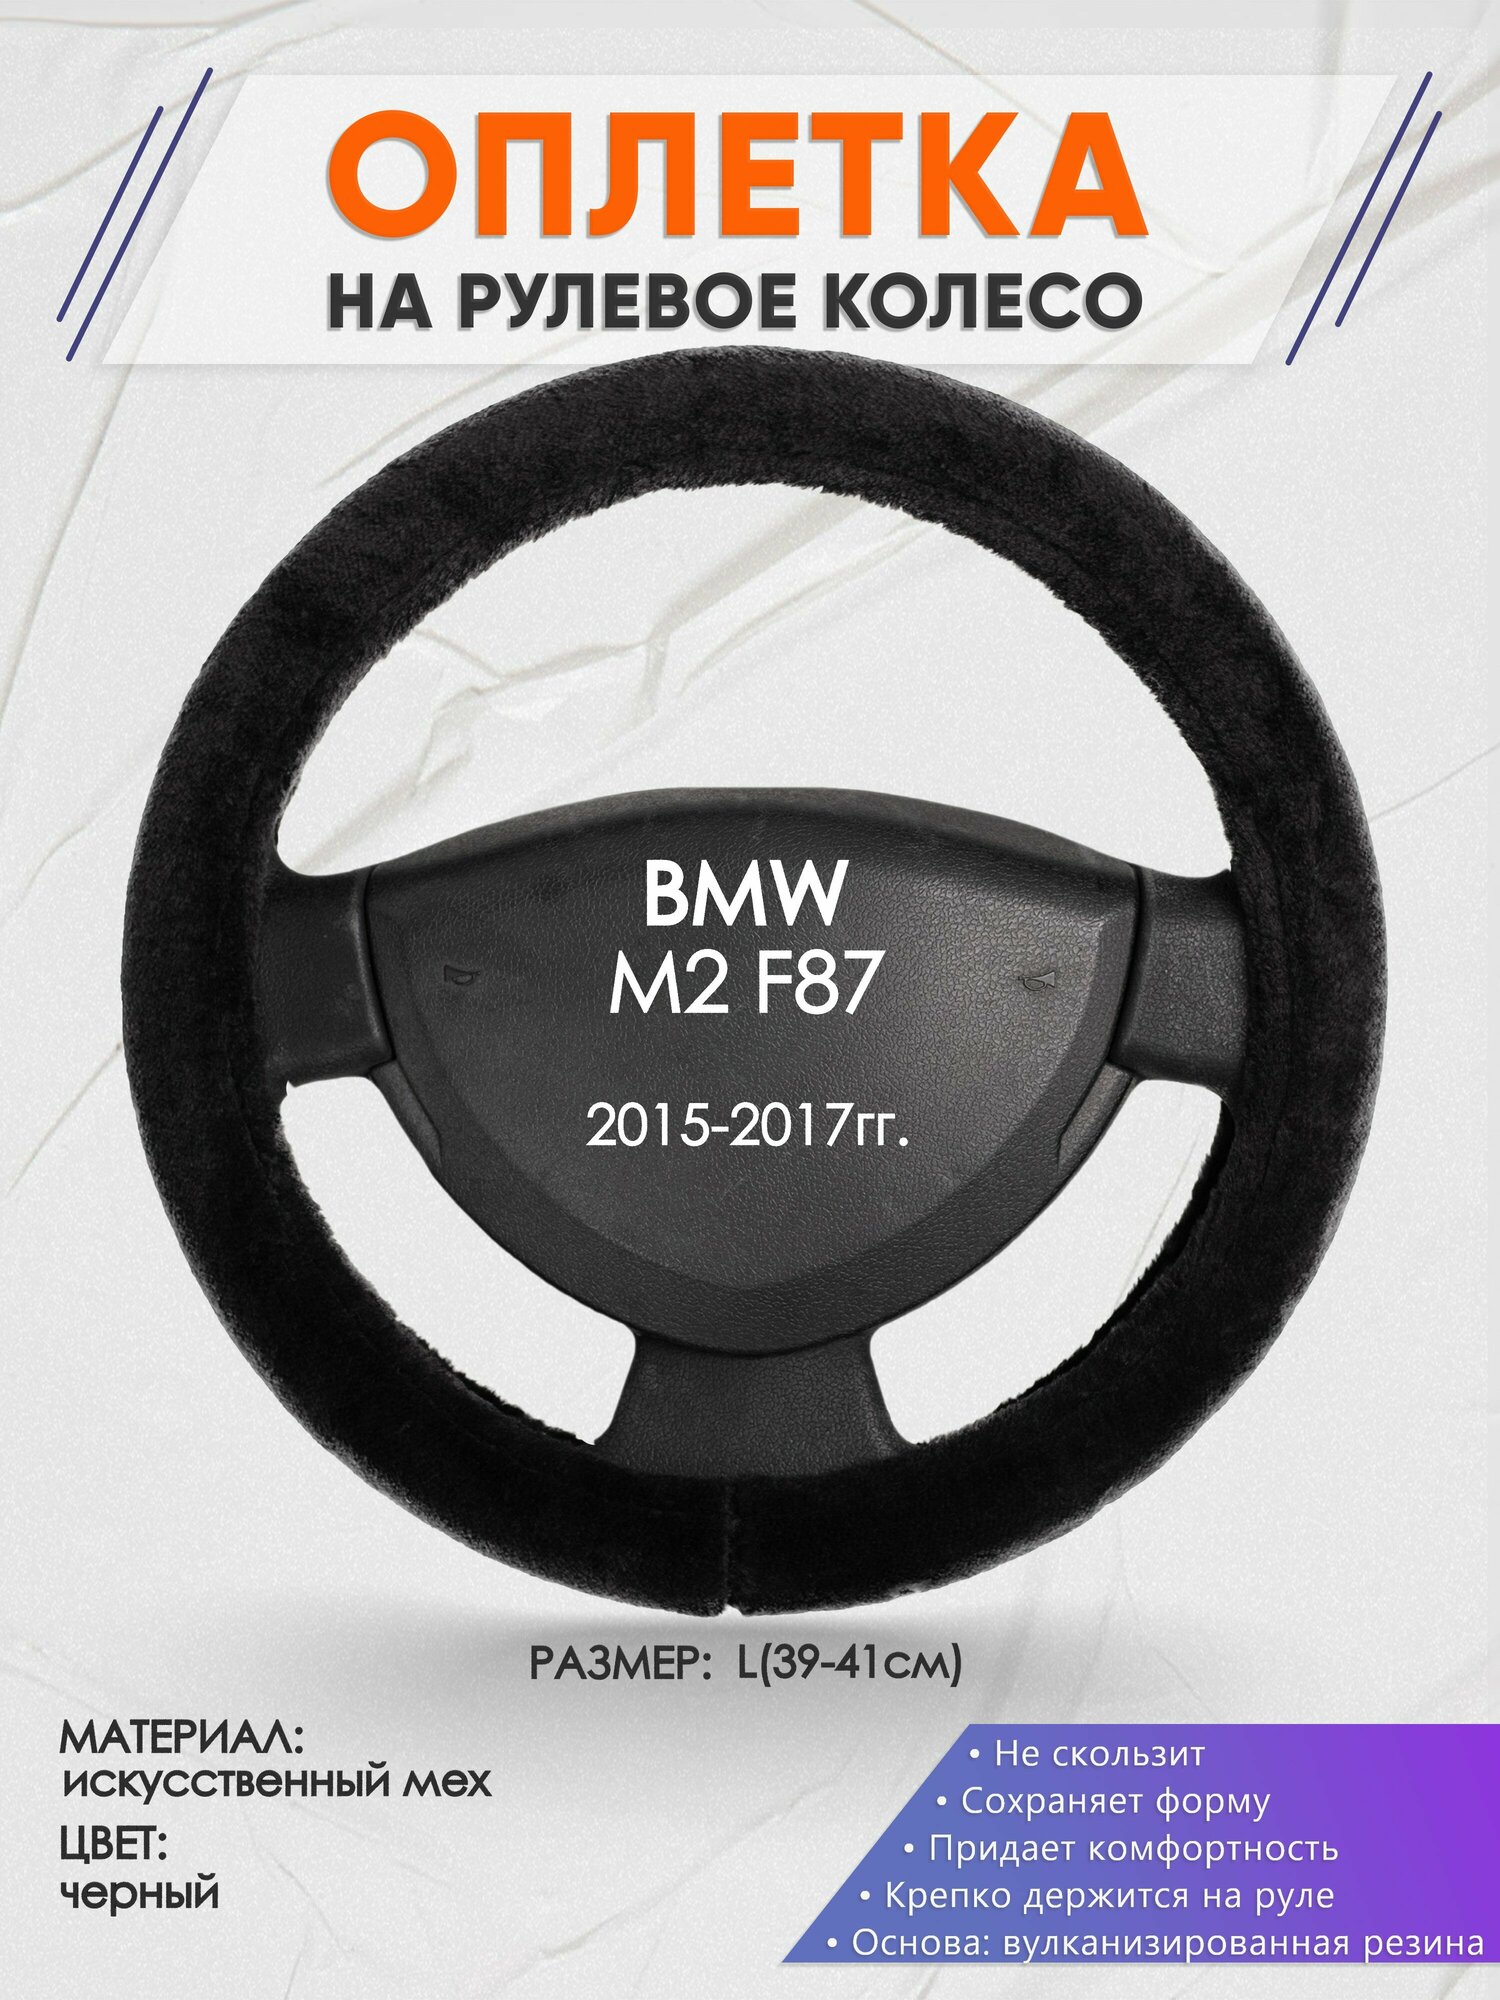 Оплетка на руль для BMW M2 F87(БМВ м2) 2015-2017, L(39-41см), Искусственный мех 45